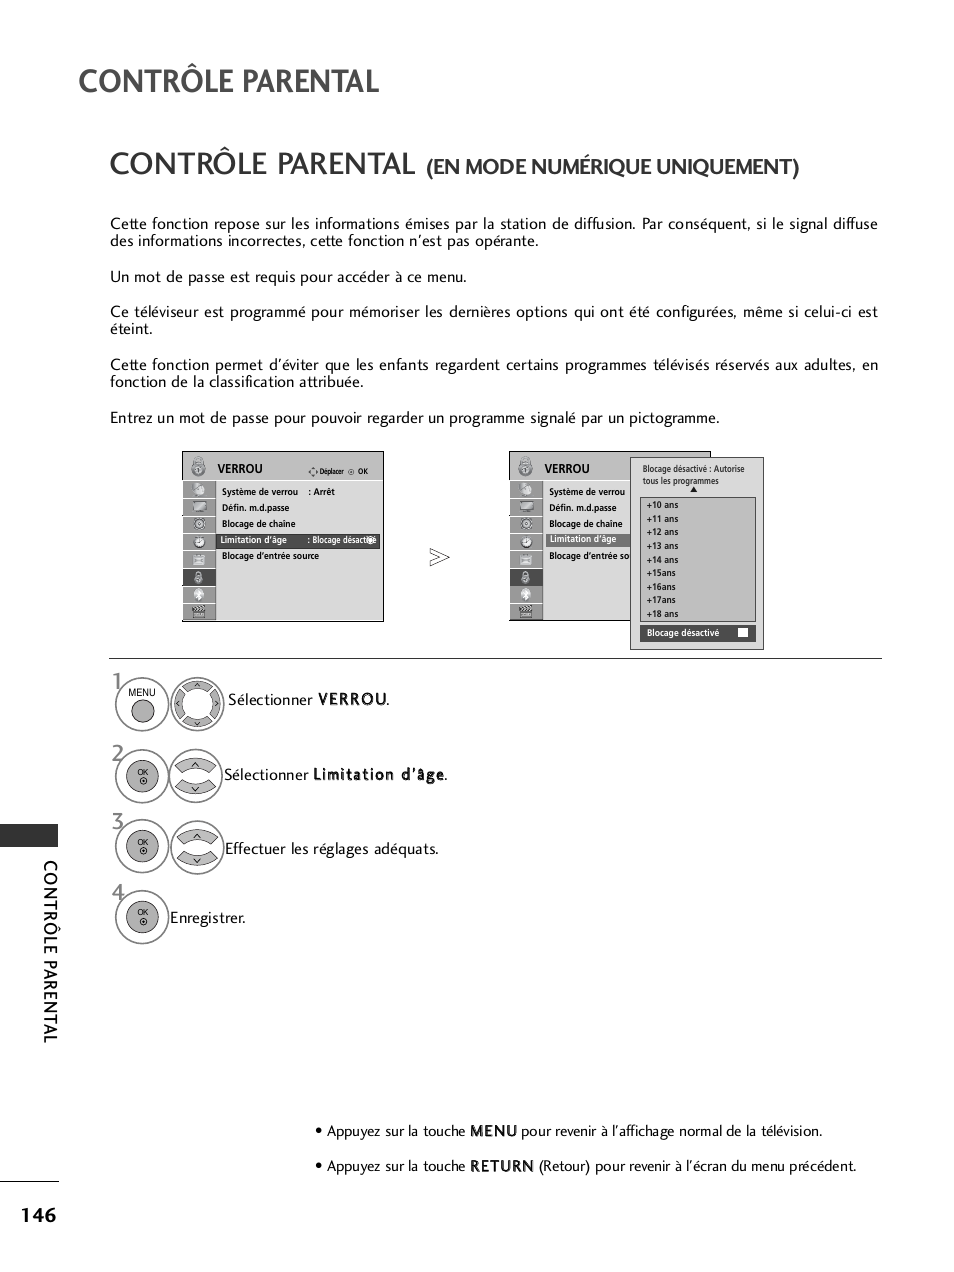 Contrôle parental, En mode numérique uniquement), Contr ôle p arent al | LG 32LH40 Manuel d'utilisation | Page 148 / 180